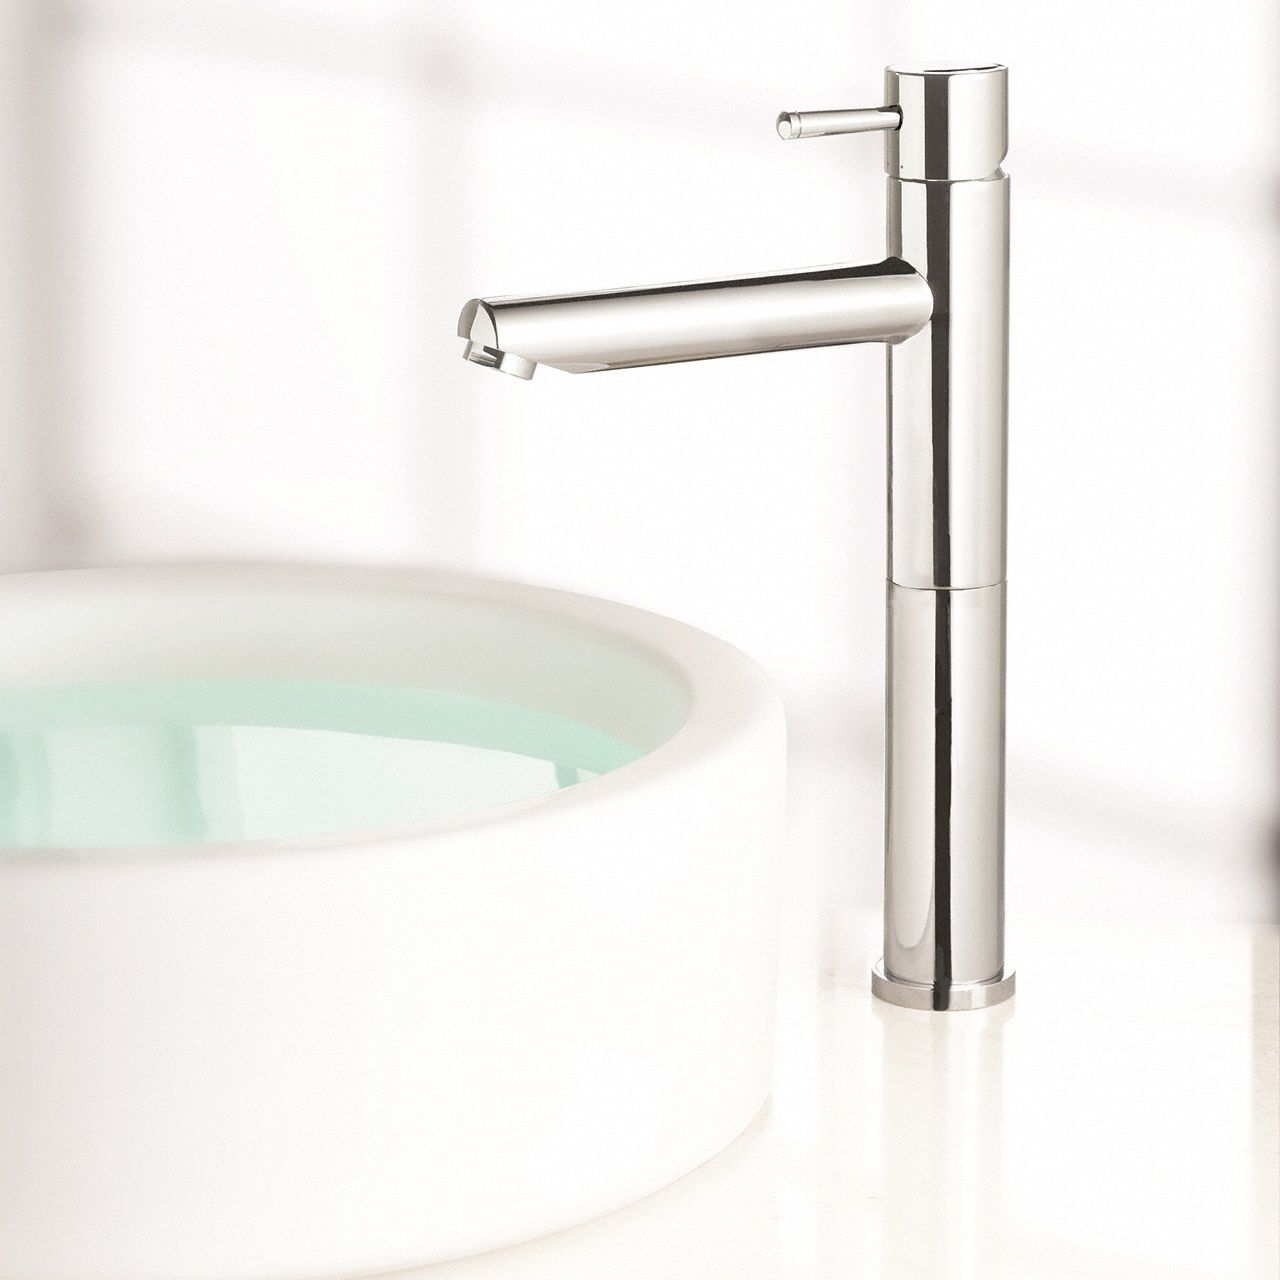 Chrome, Vessel, Bathroom Sink Faucet, Manual Faucet Activation, 1.2 gpm